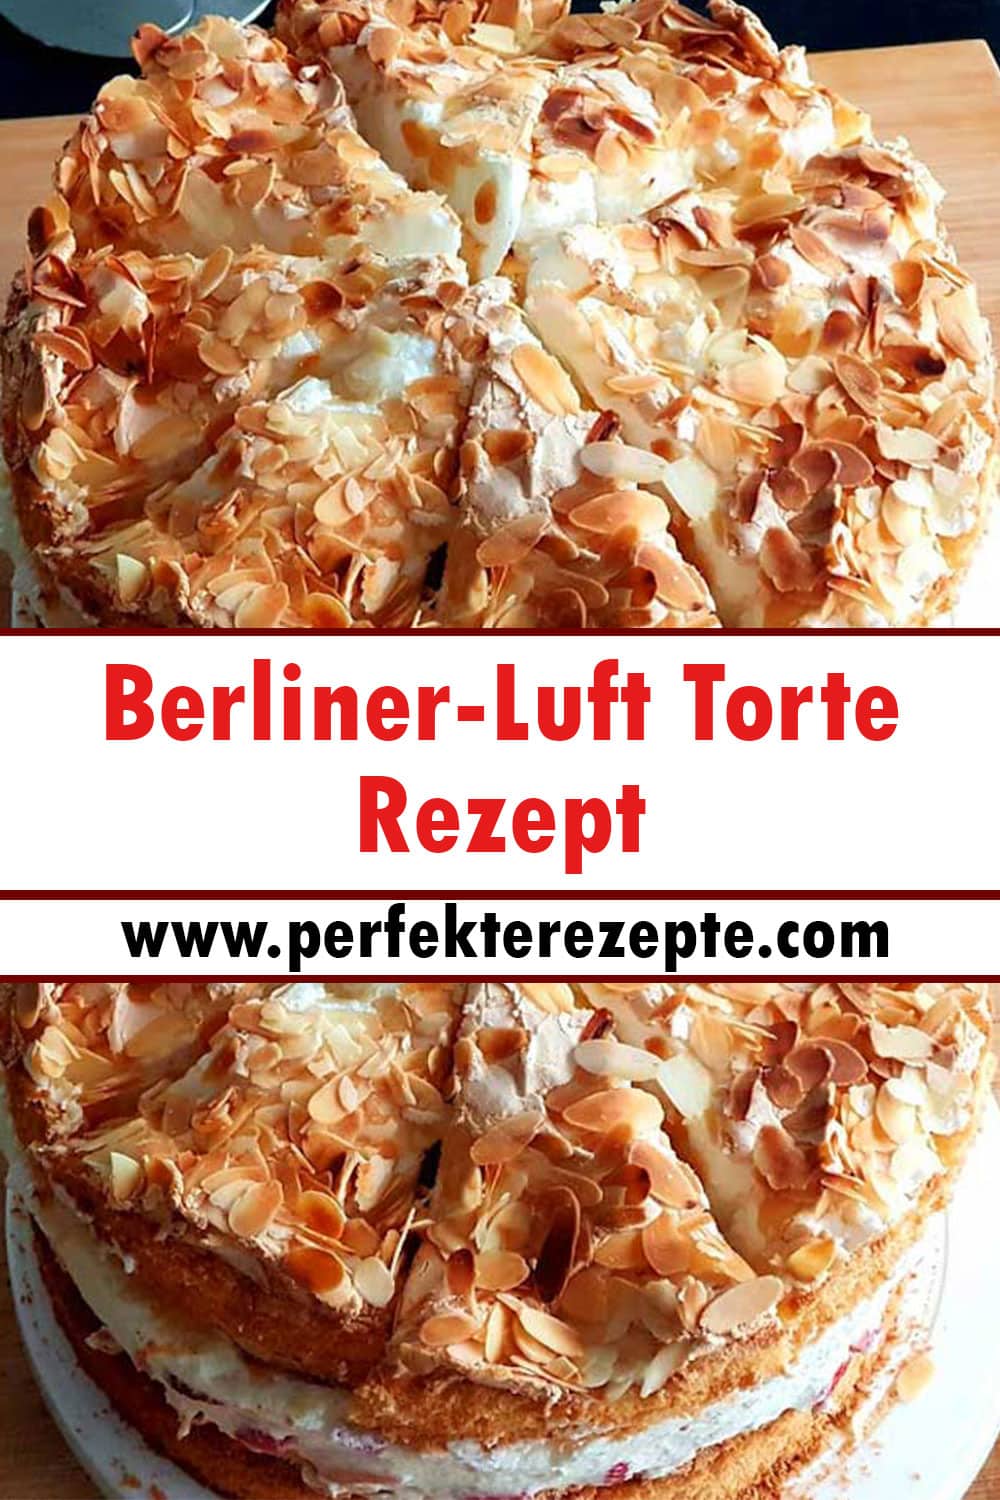 Berliner-Luft Torte Rezept